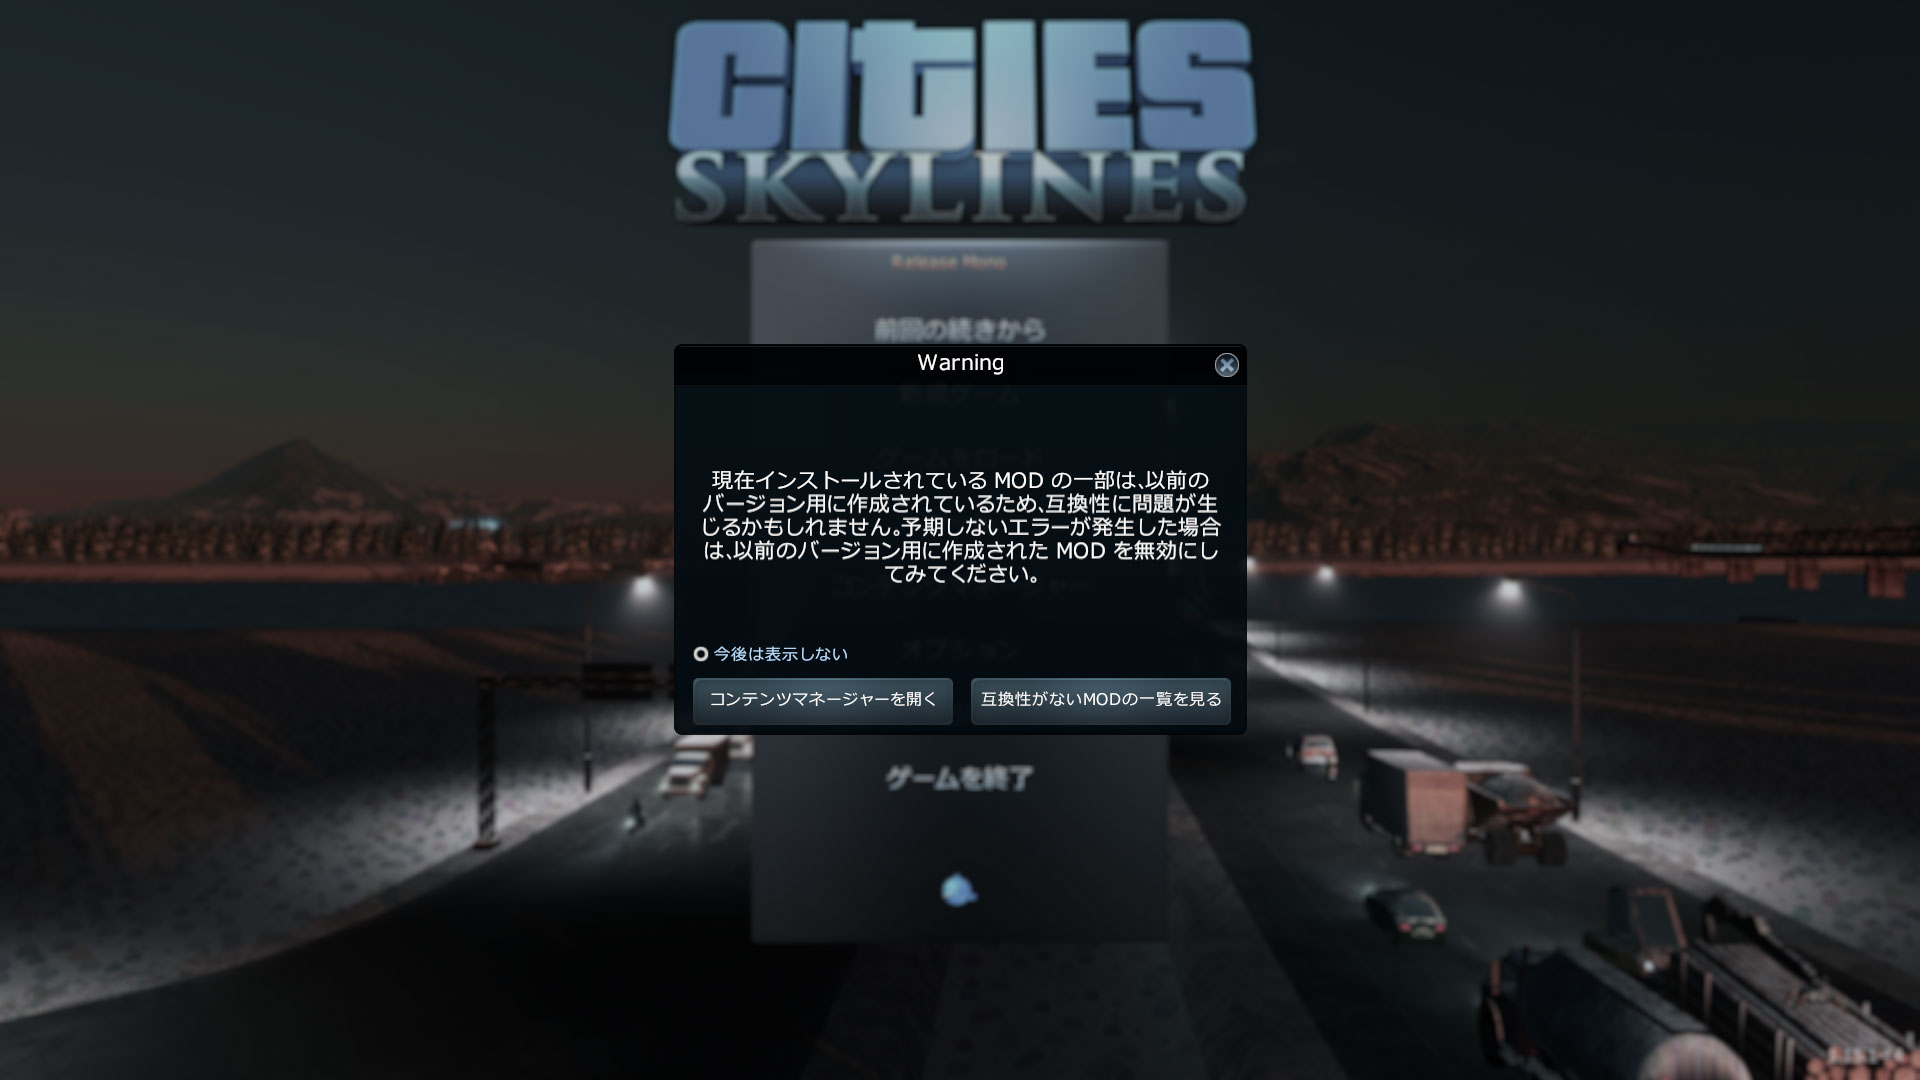 Cities_Skylines-3325